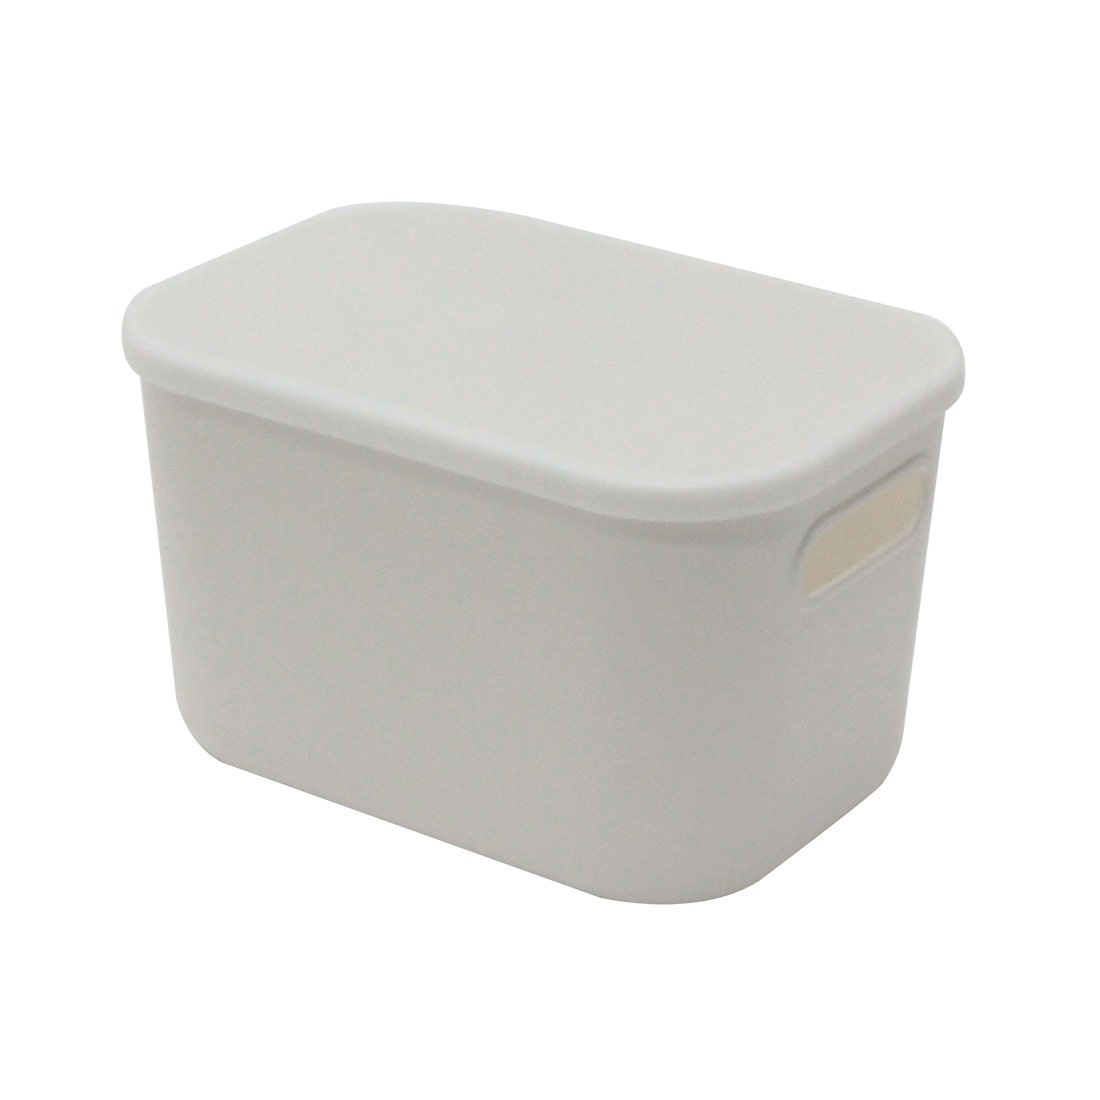 LS PLASTIC BOX #1014-4/WHITE